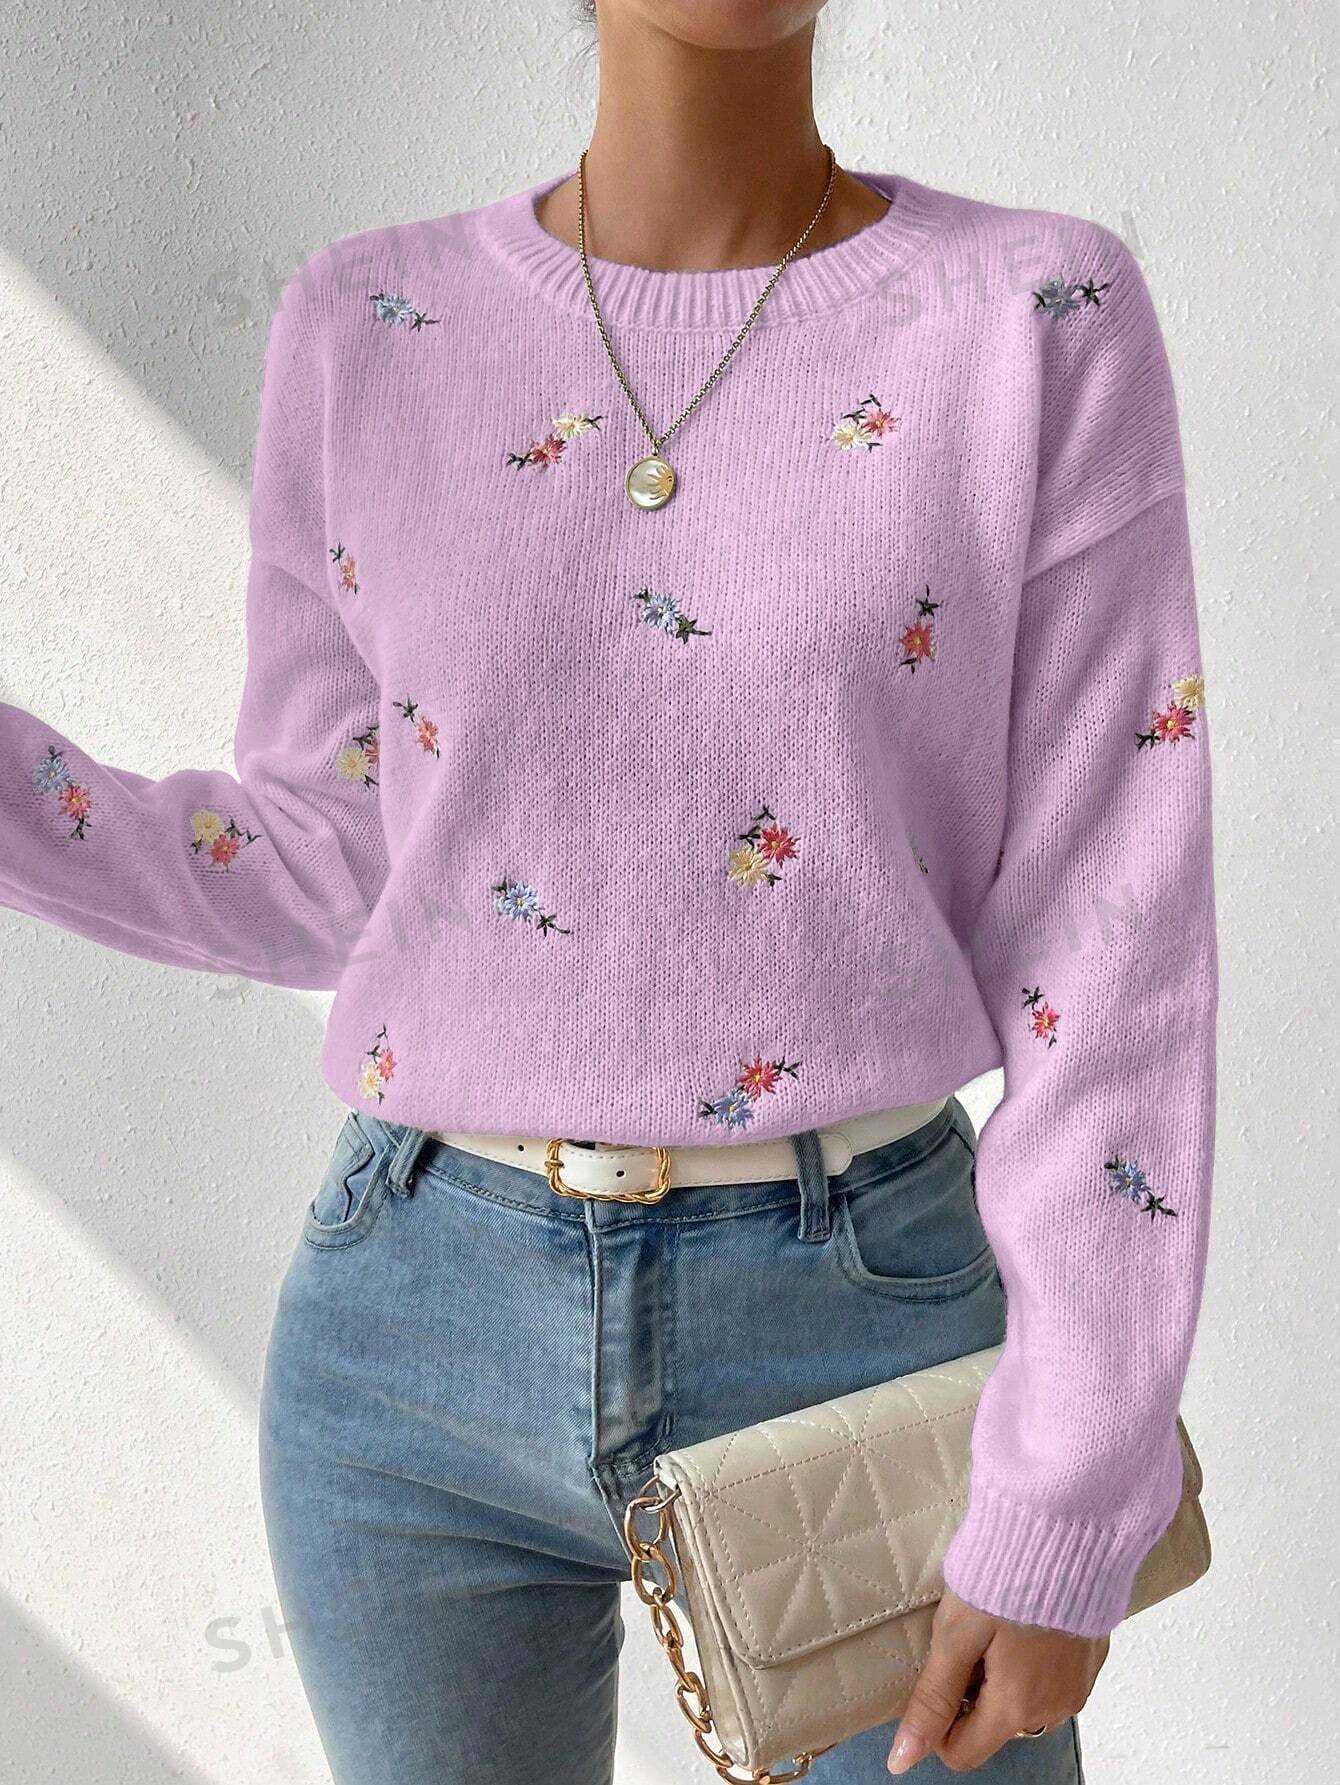 SHEIN Essnce Свитер с круглым вырезом и открытыми плечами с цветочной вышивкой, сиреневый фиолетовый